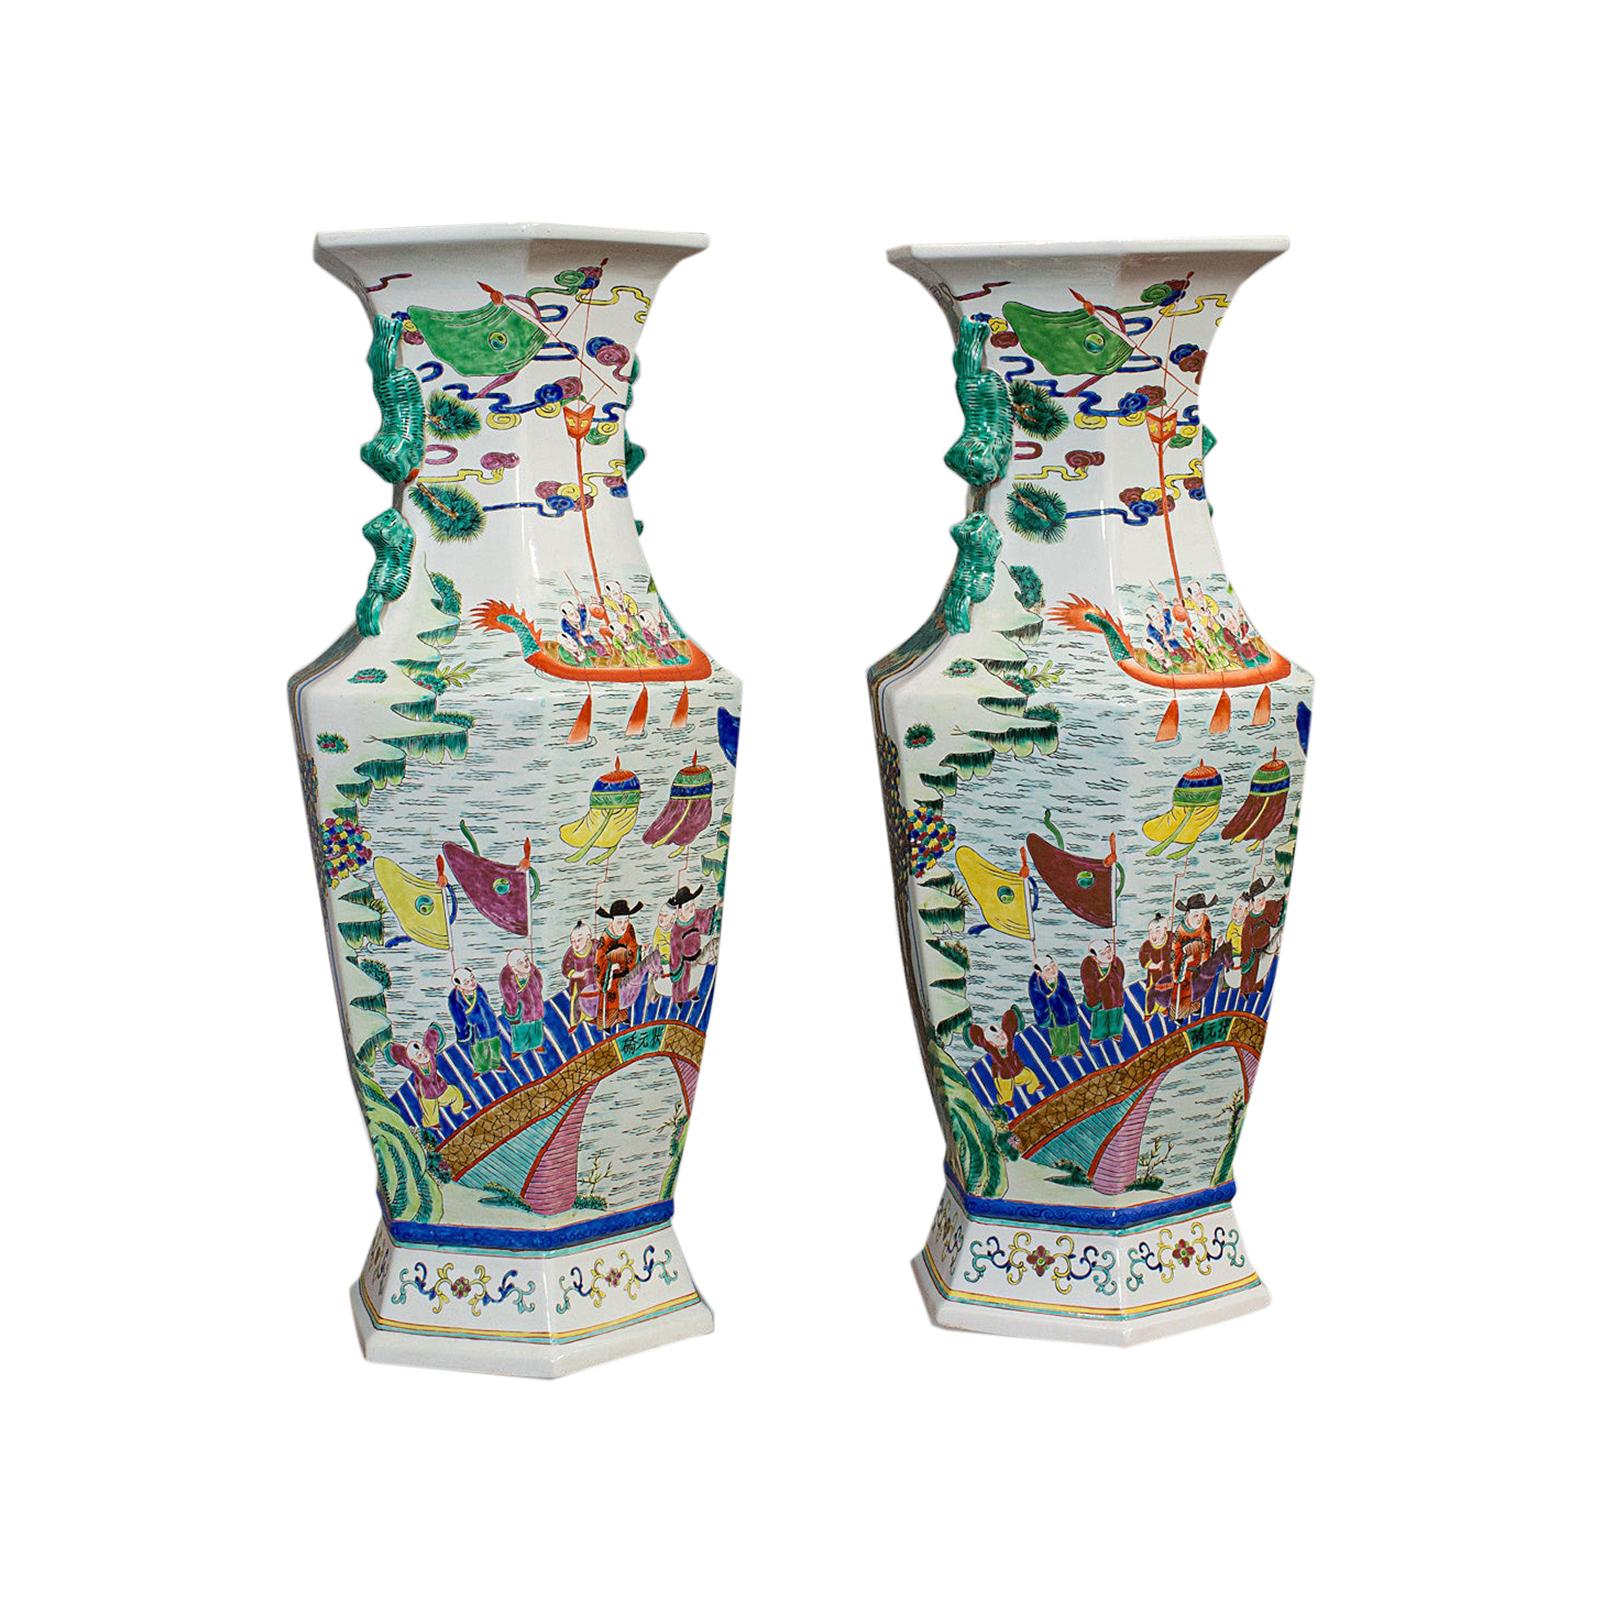 Very Large Pair, Antique Decorative Vases, Oriental, Ceramic, Urn, circa 1900